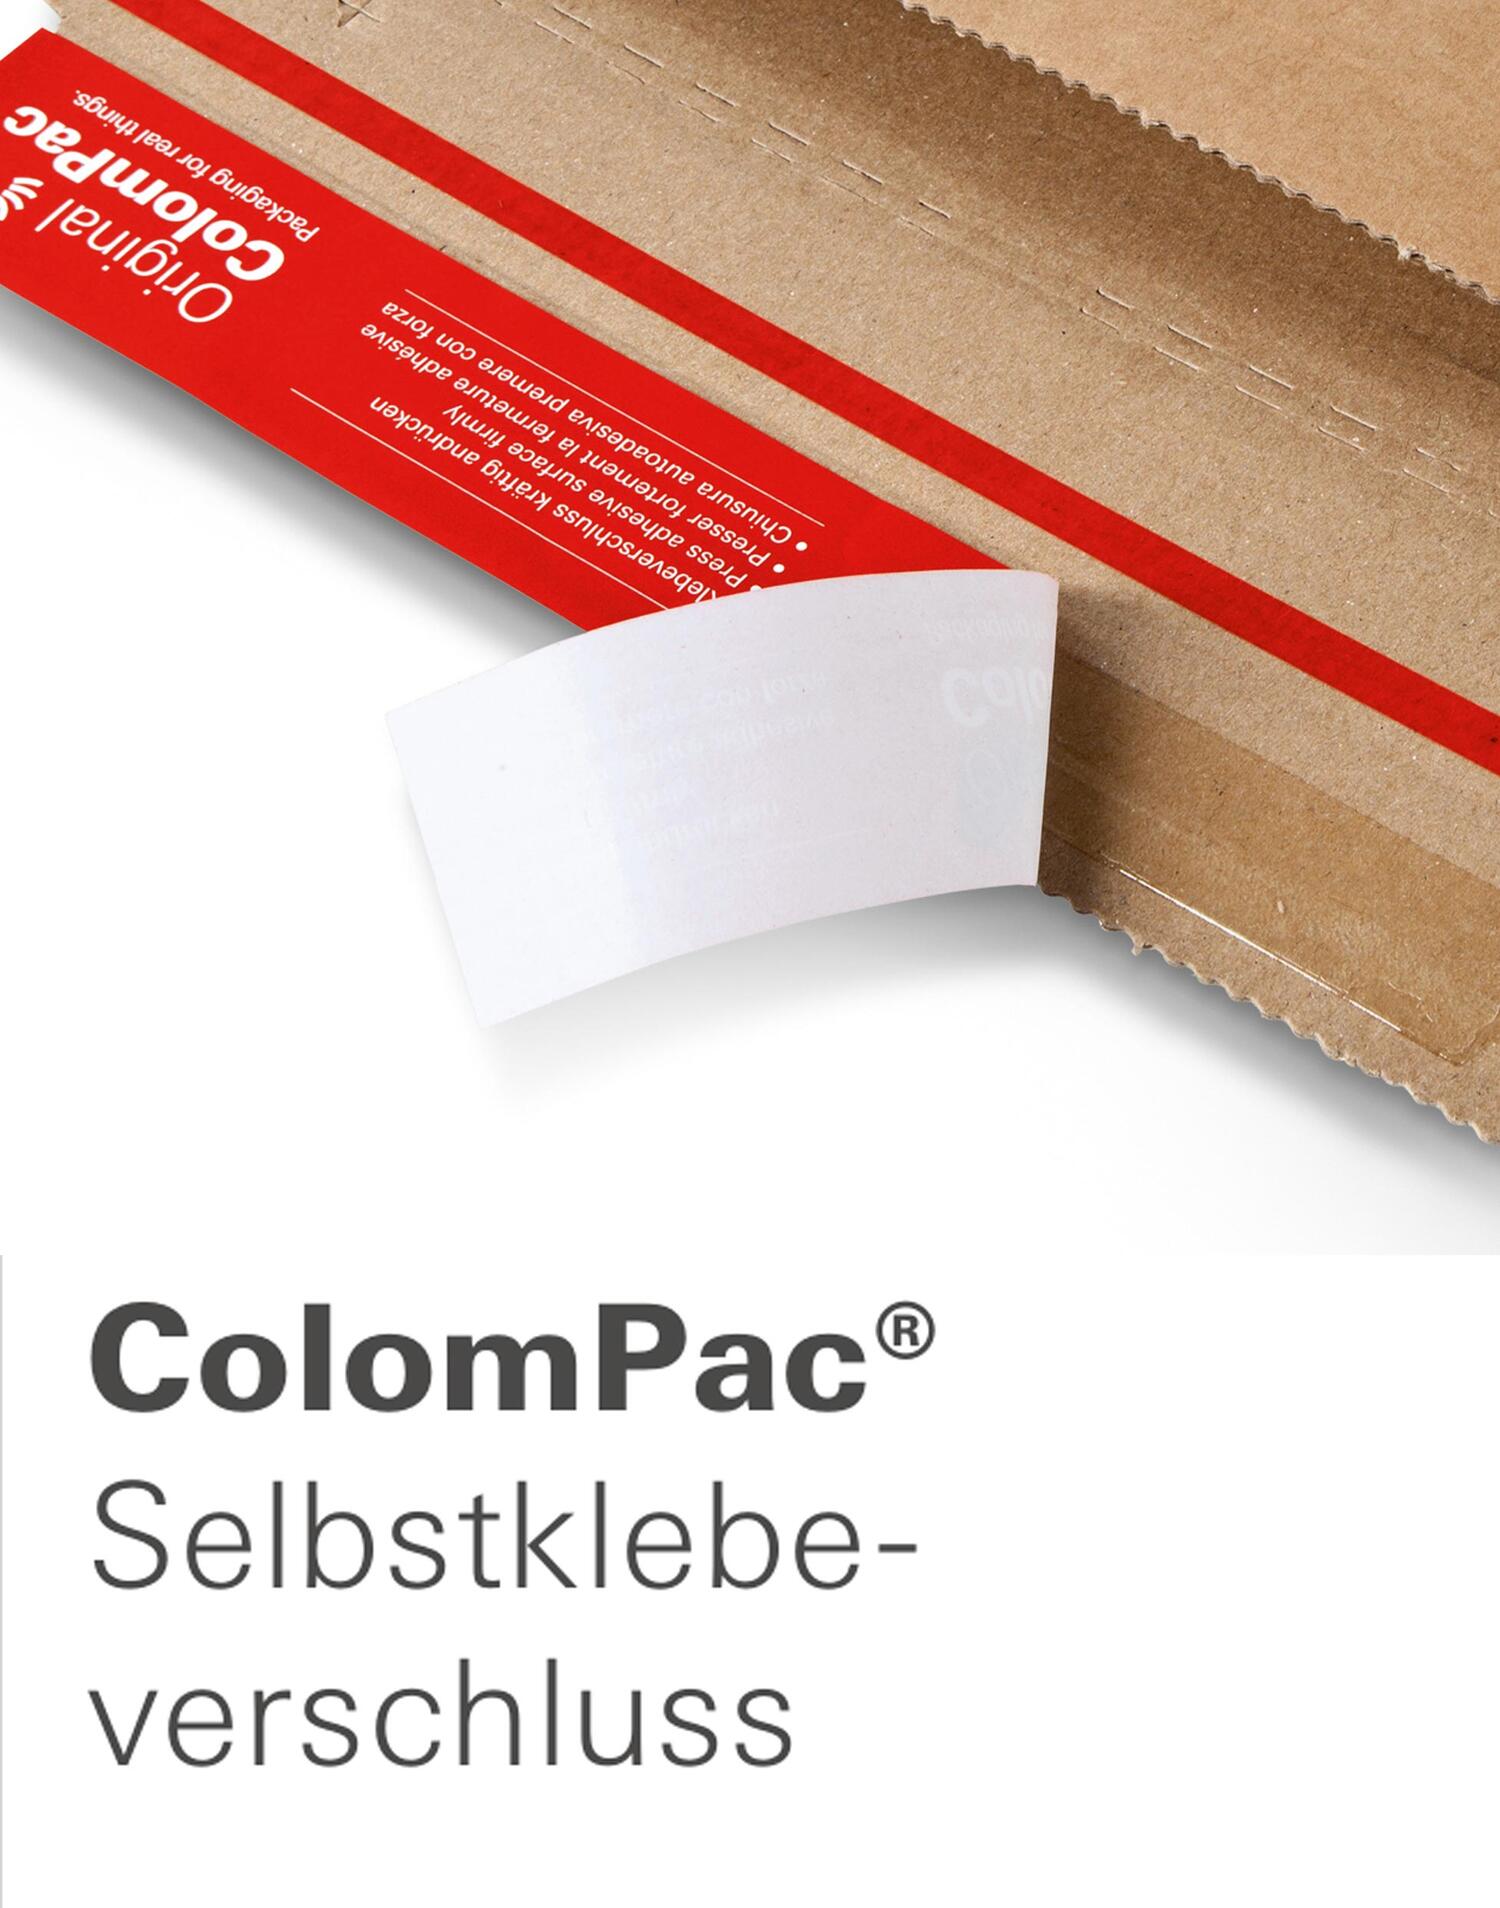 ColomPac E-Commerce Modulboxen 325 x 216 x 96mm mit Selbstklebeverschluss & Aufreifaden braun